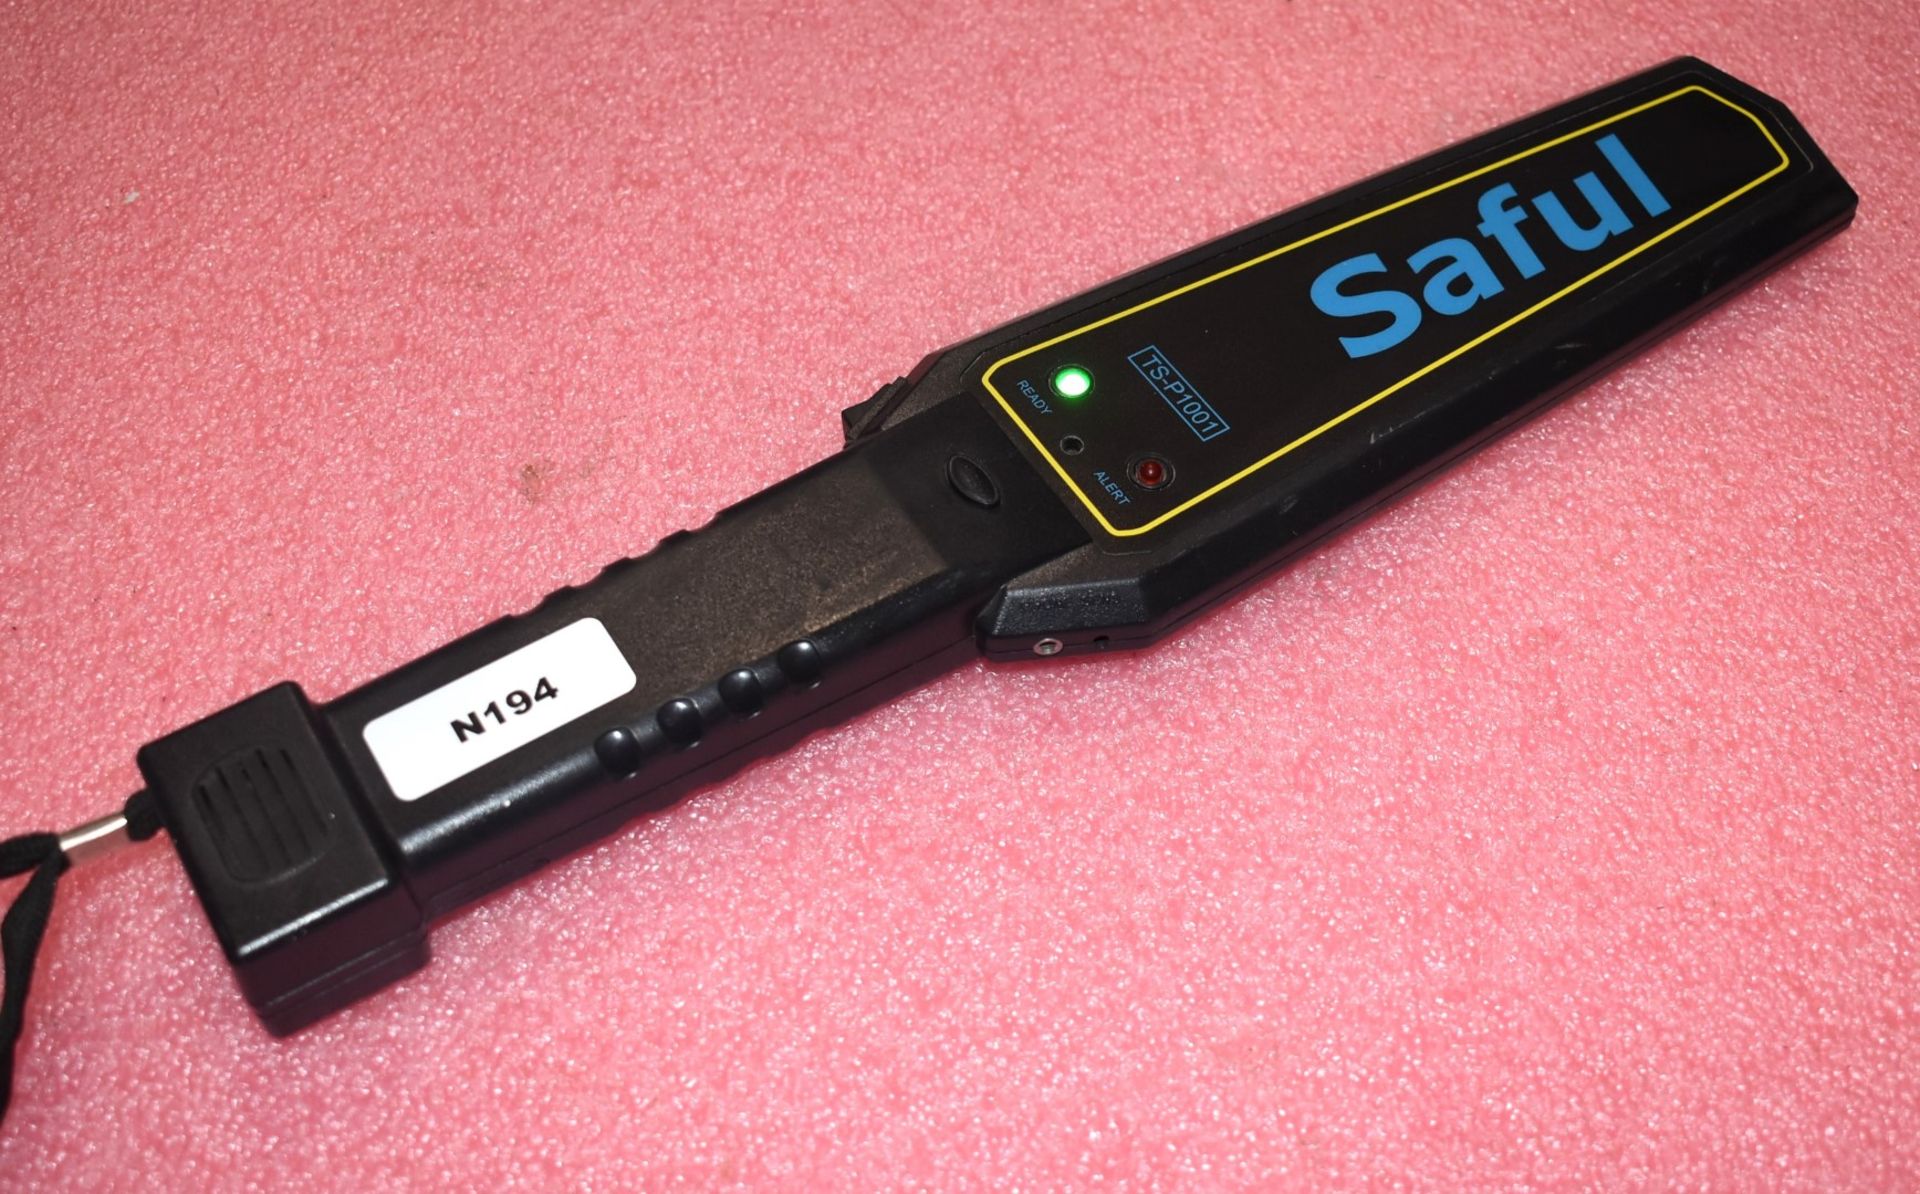 1 x Saful TS-P1001 Handheld Metal Detector - Image 2 of 5